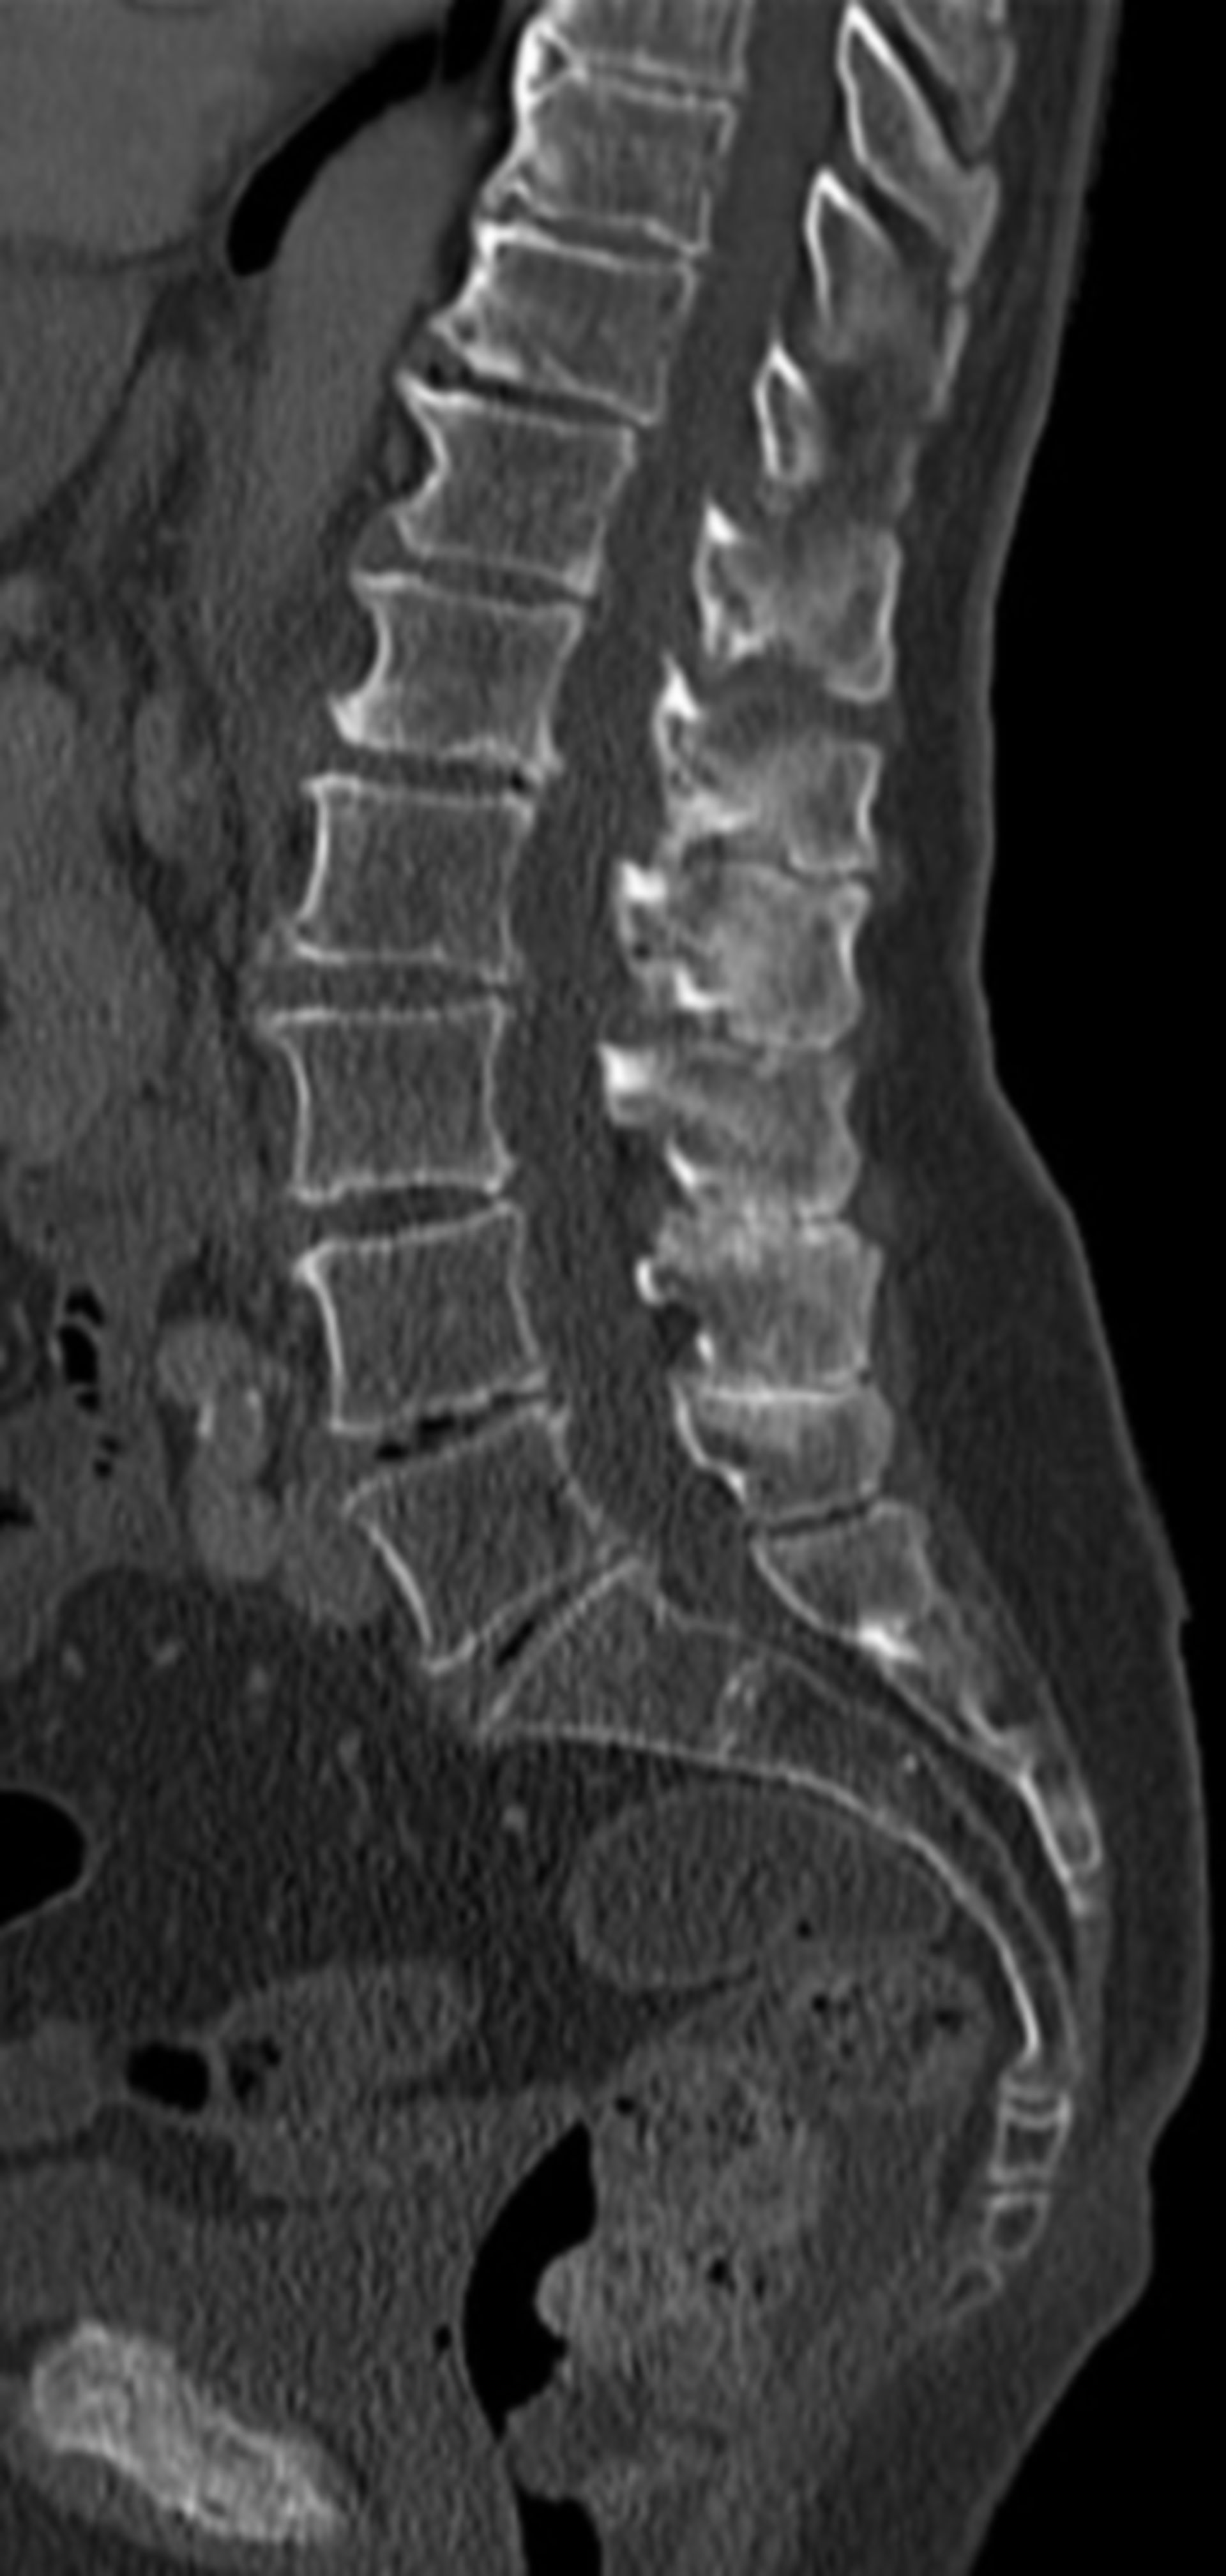 Baastrup CT sagittal